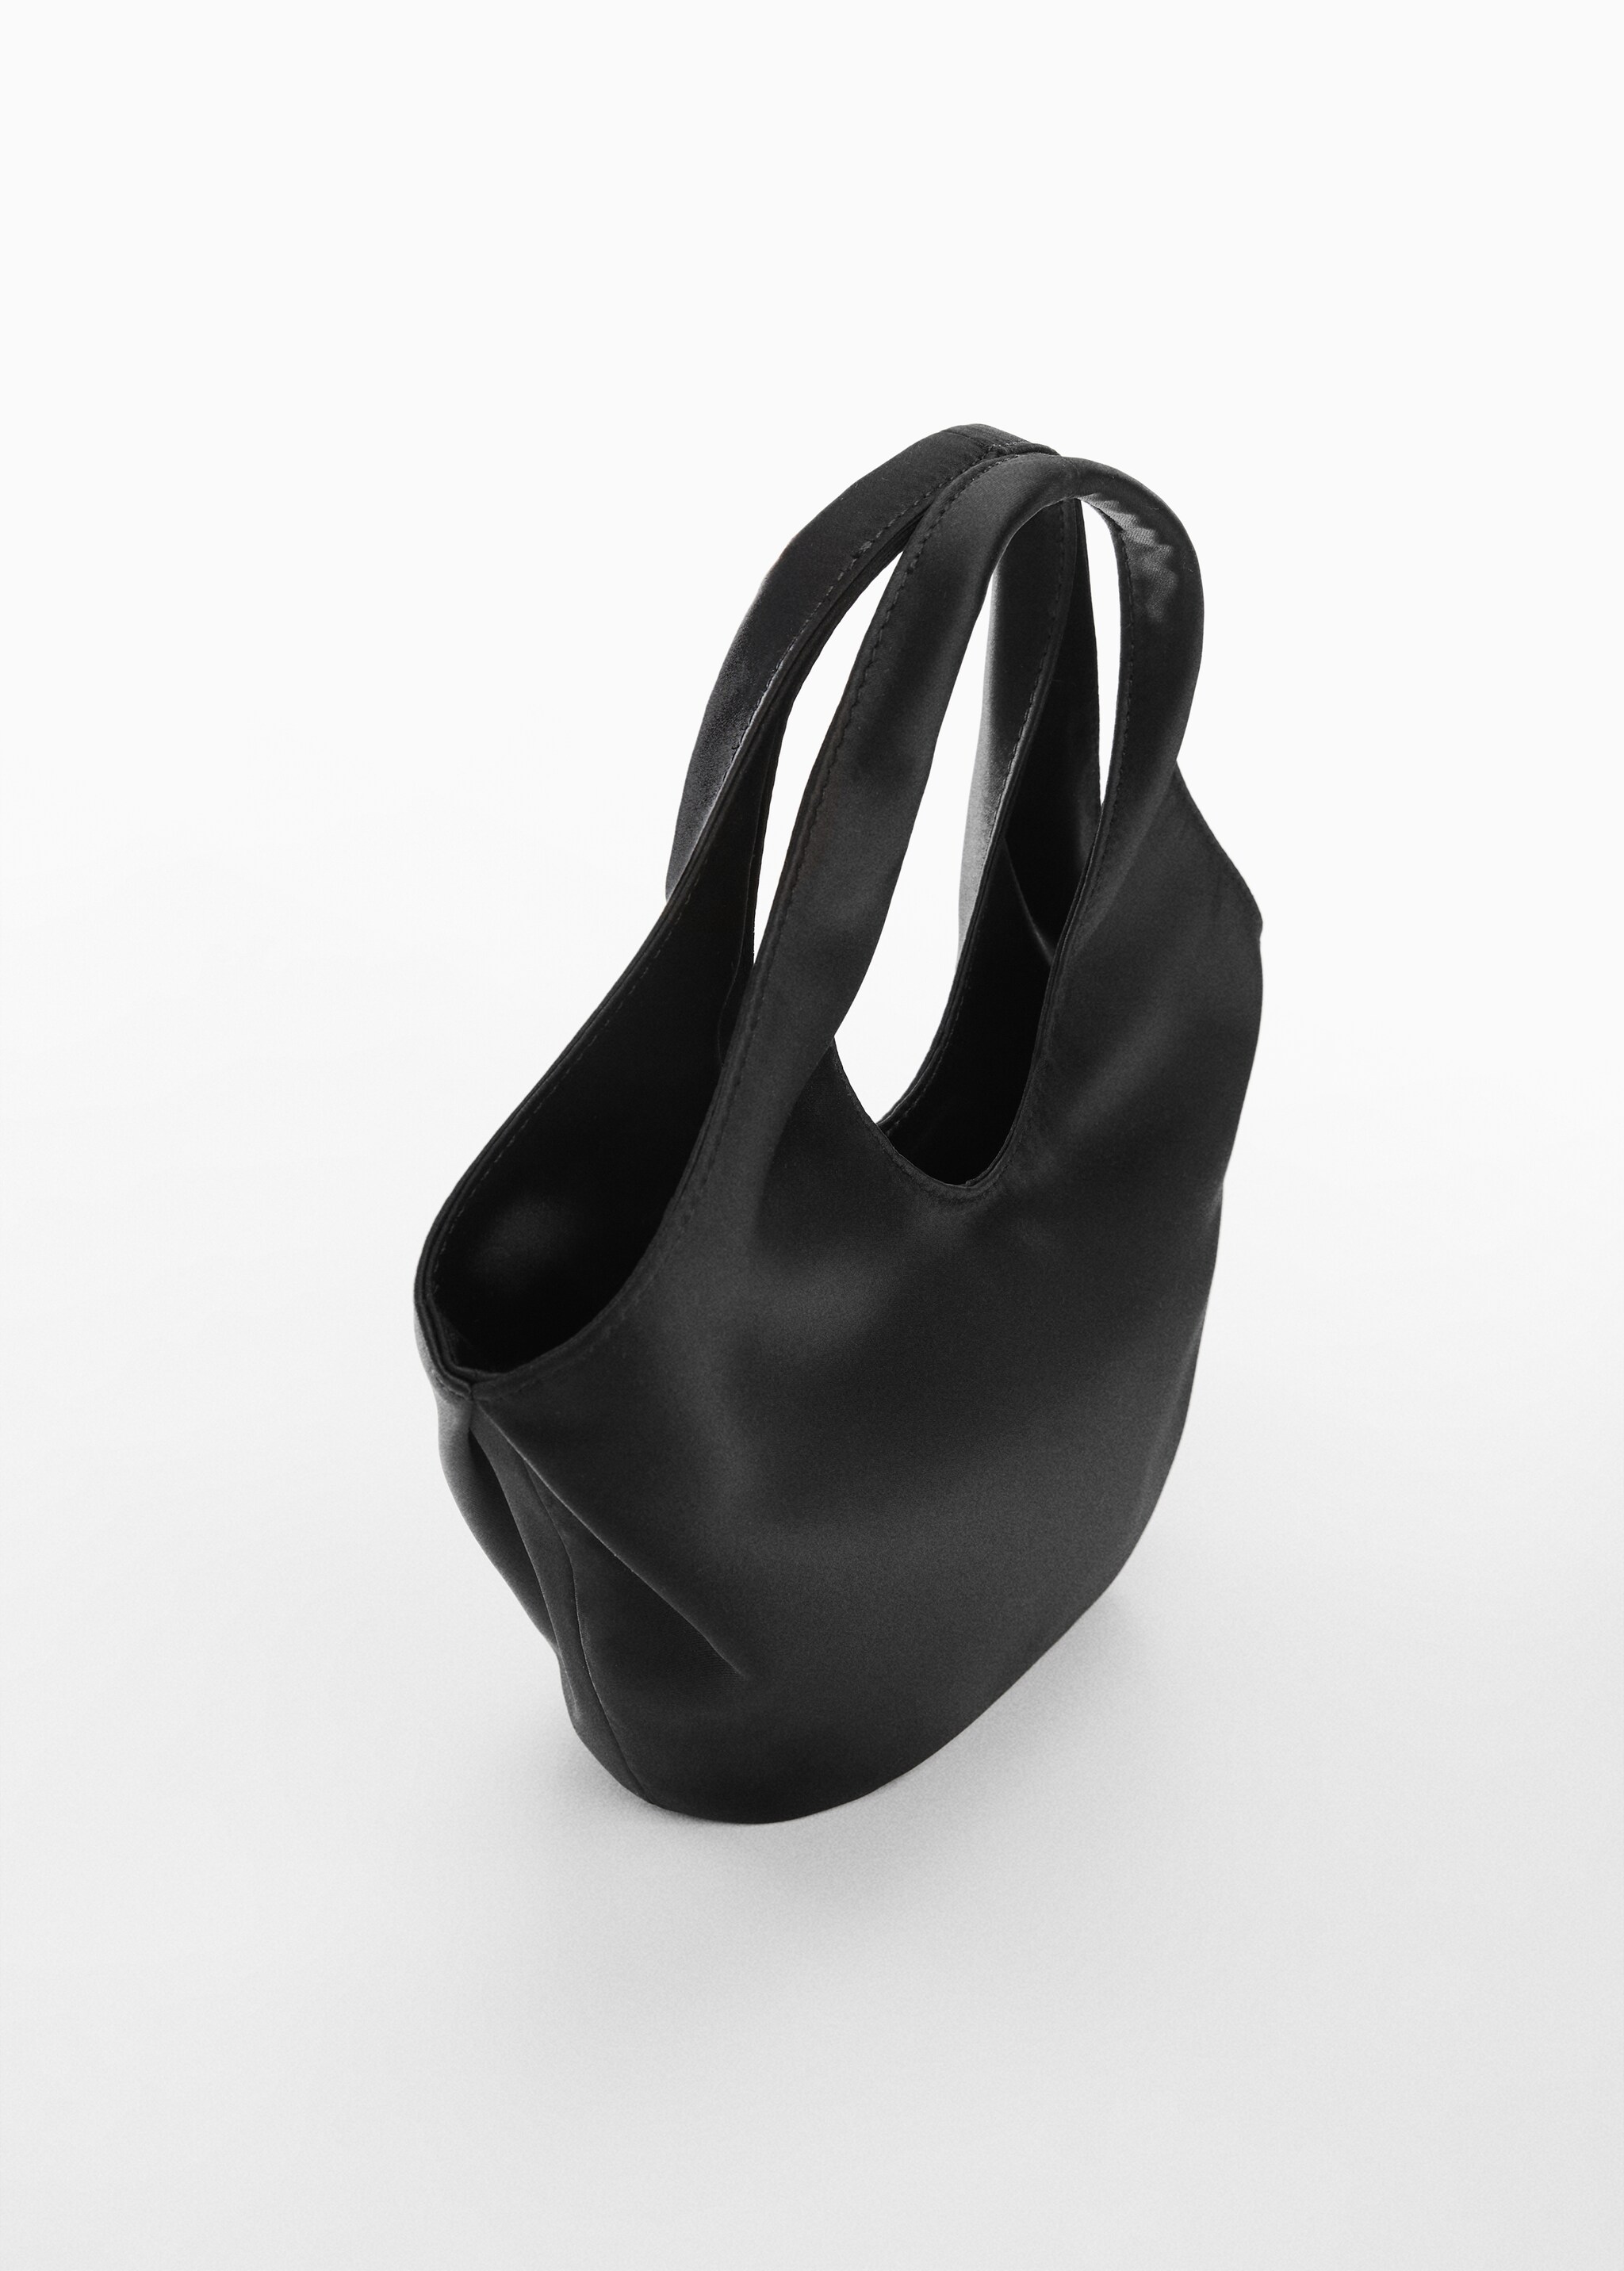 Атласная сумка для ношения в руке - Средний план